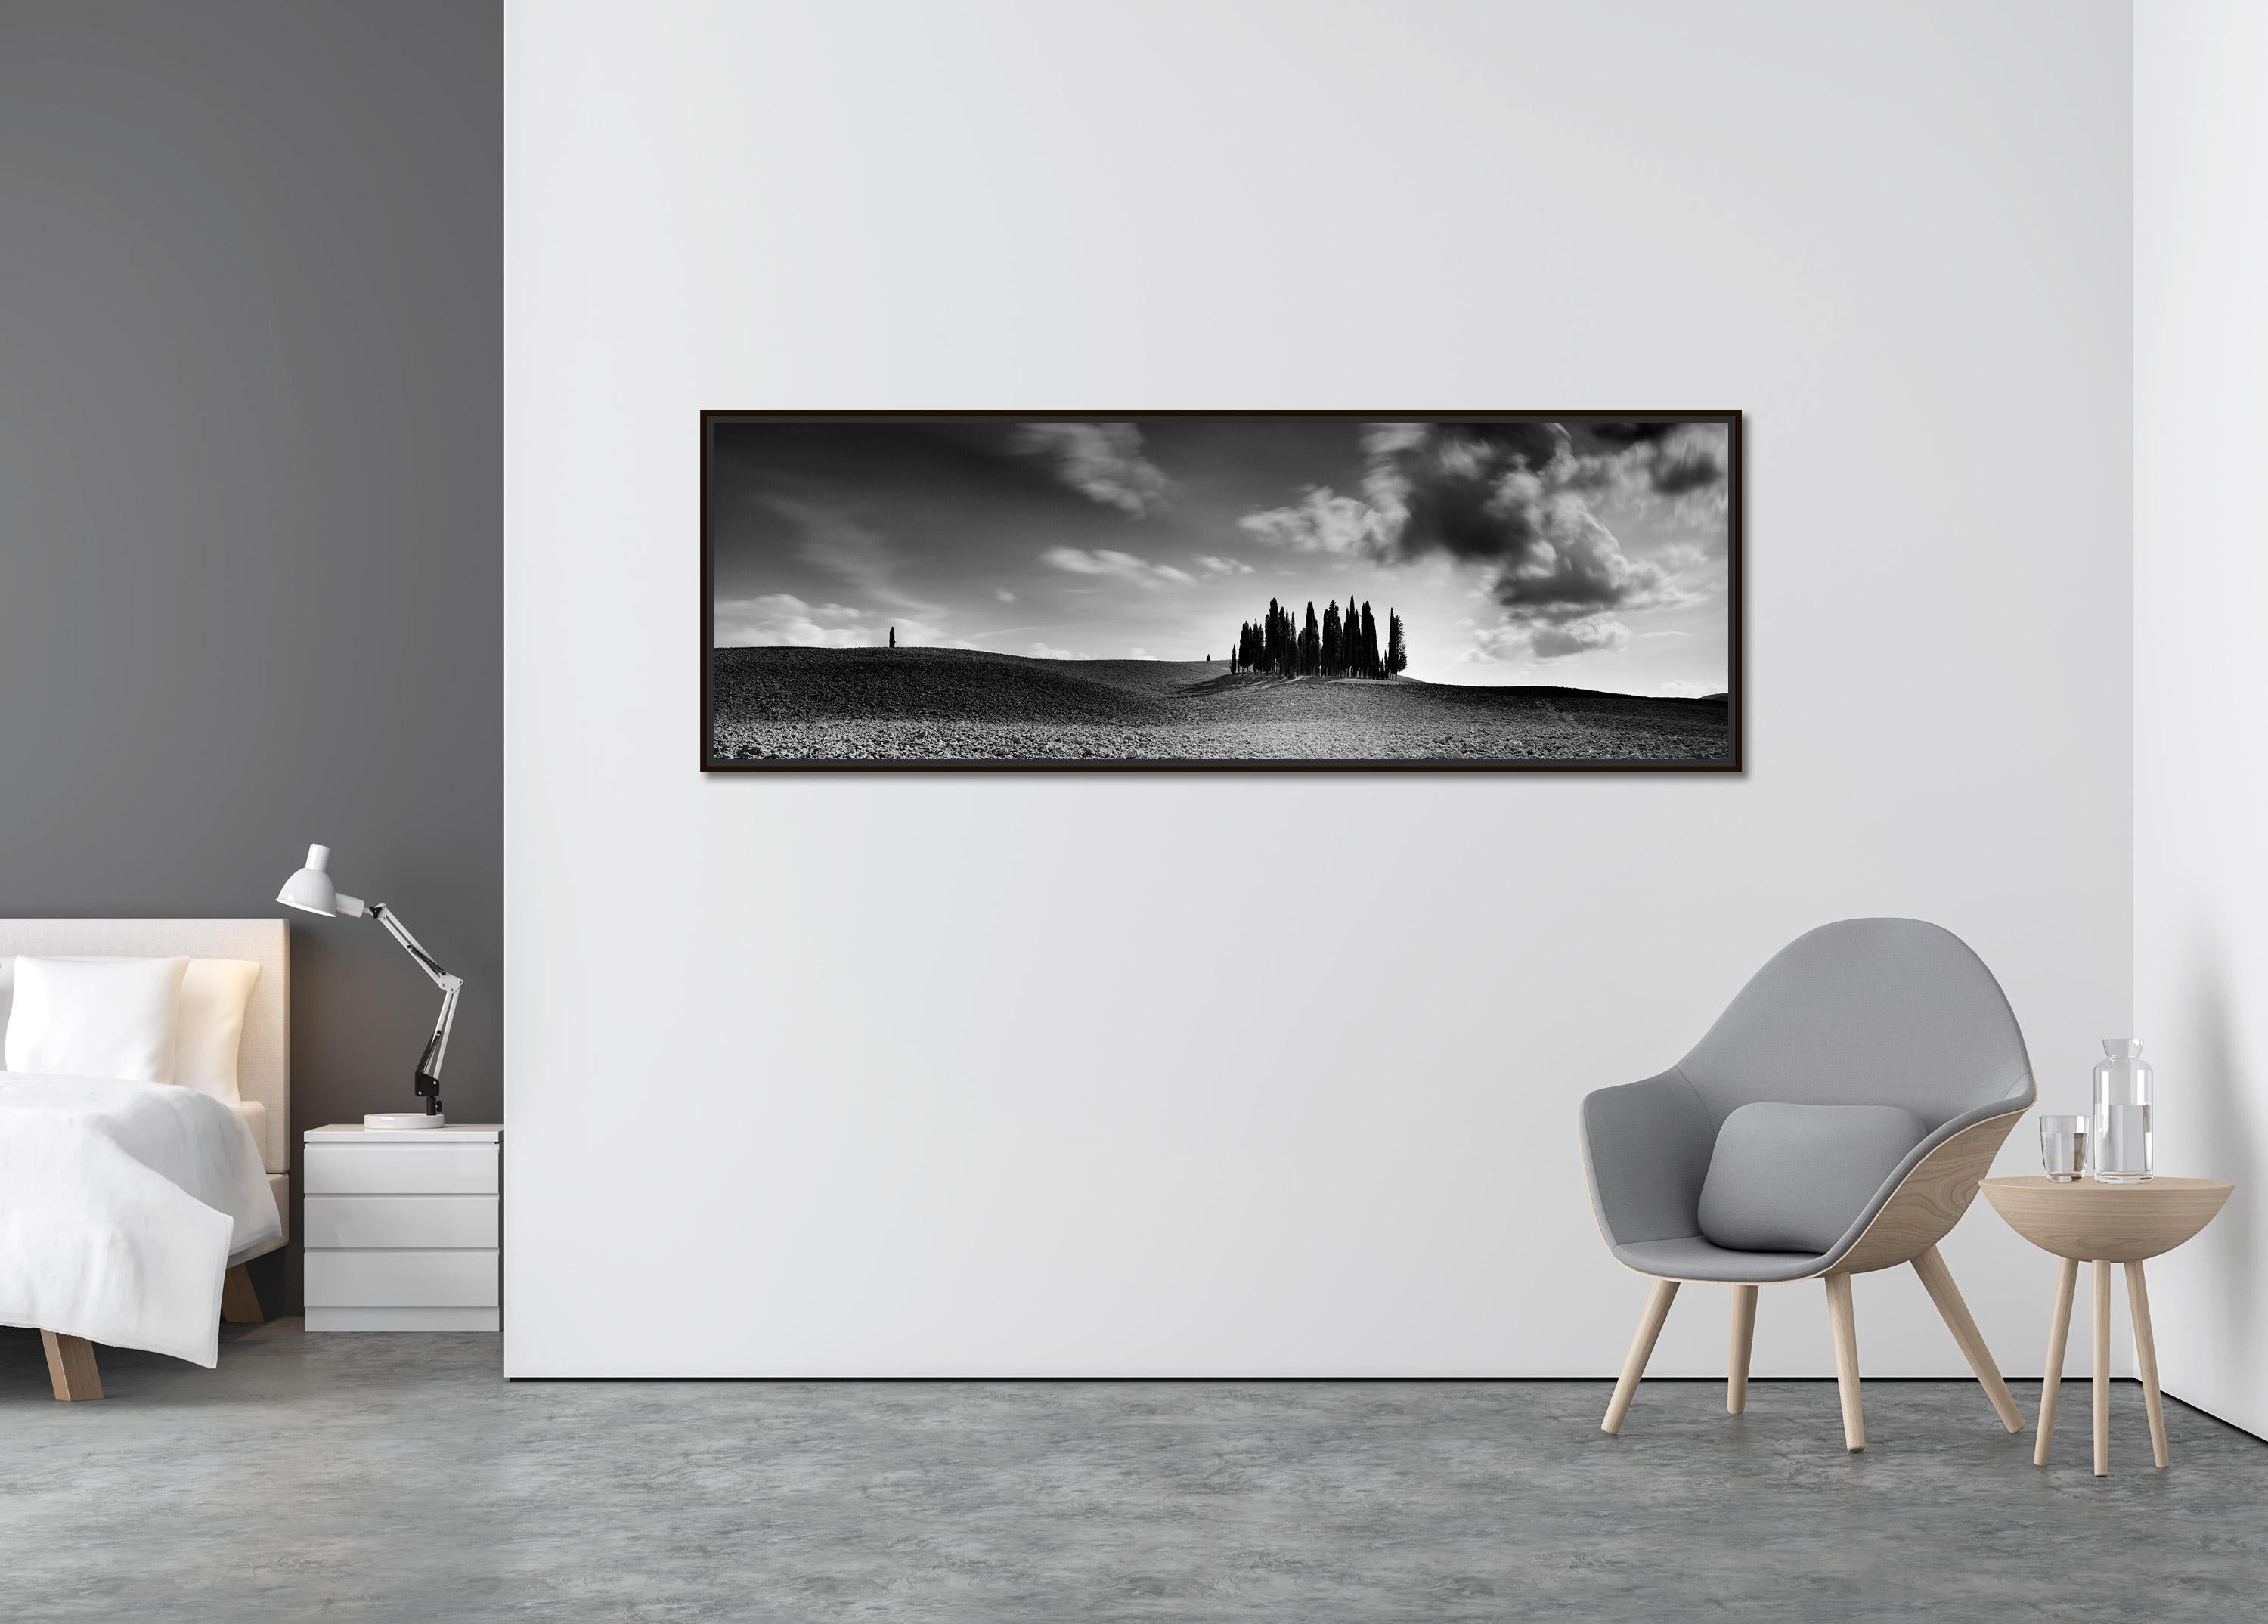 Zypressenbaum, Feld, Panorama, Toskana, Schwarz-Weiß-Landschaftsfotografie (Zeitgenössisch), Photograph, von Gerald Berghammer